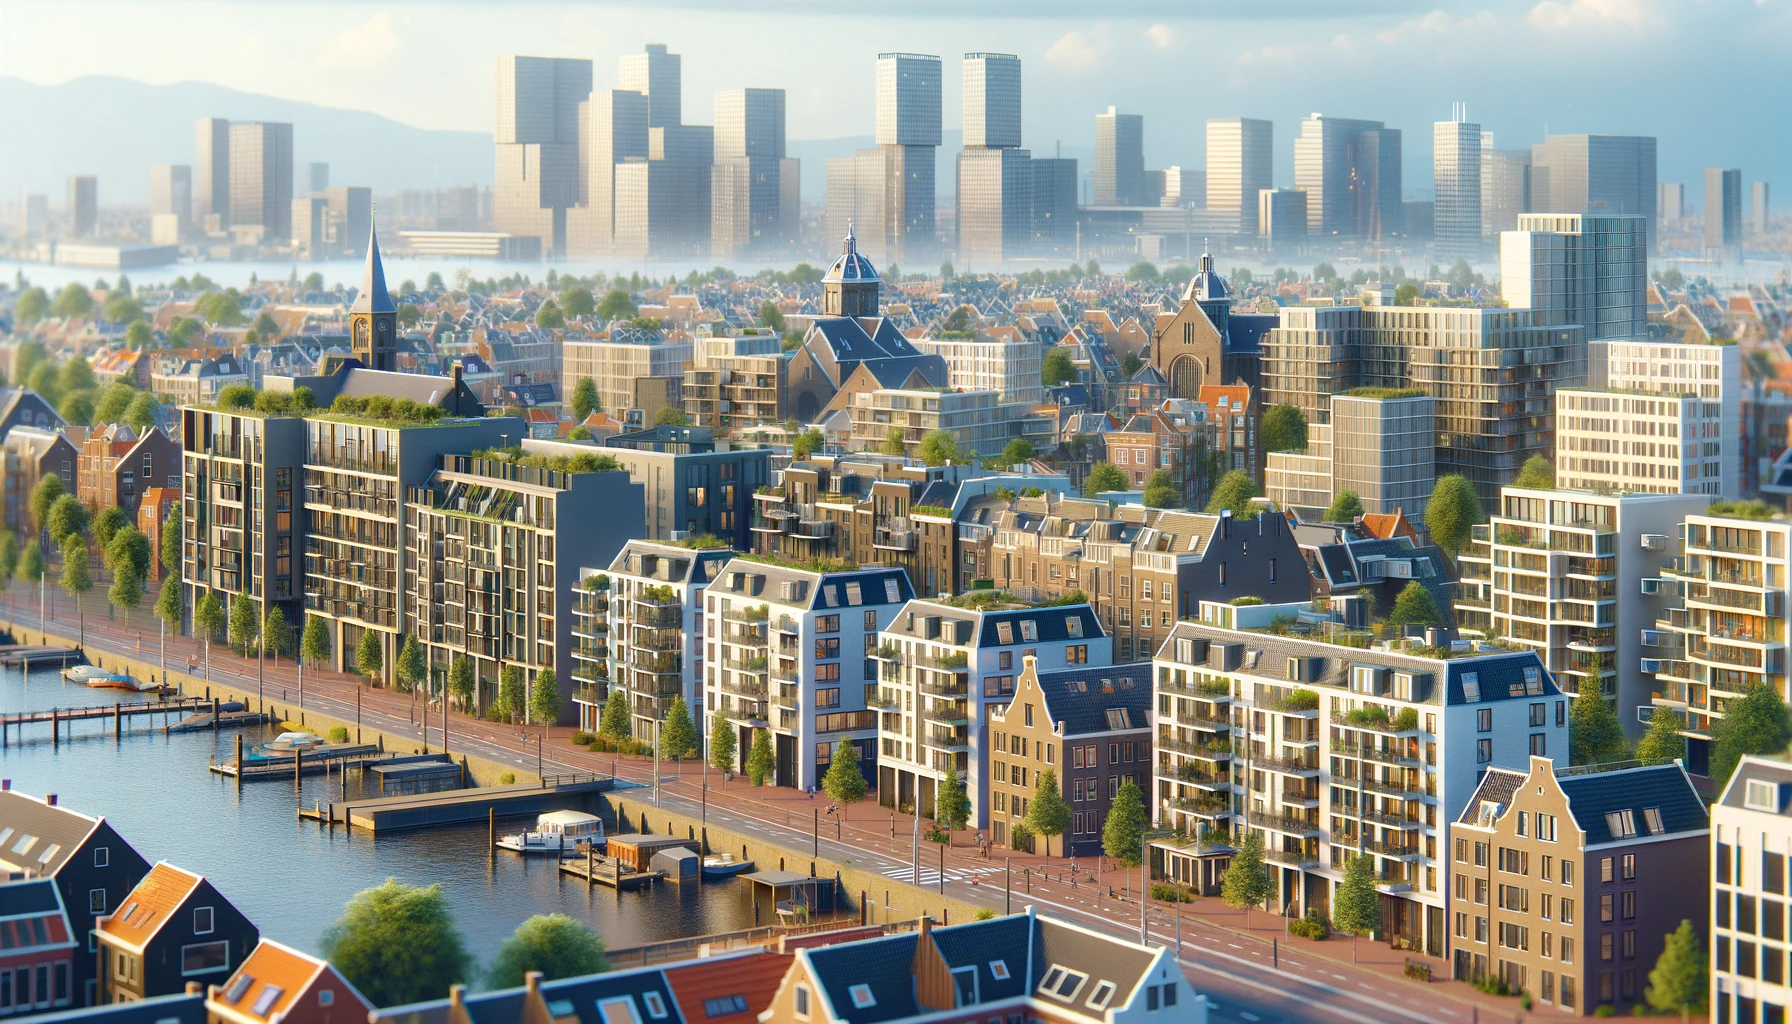 Hestiva Blog | Strengere Regulering van Sociale Huurwoningen in Amsterdam